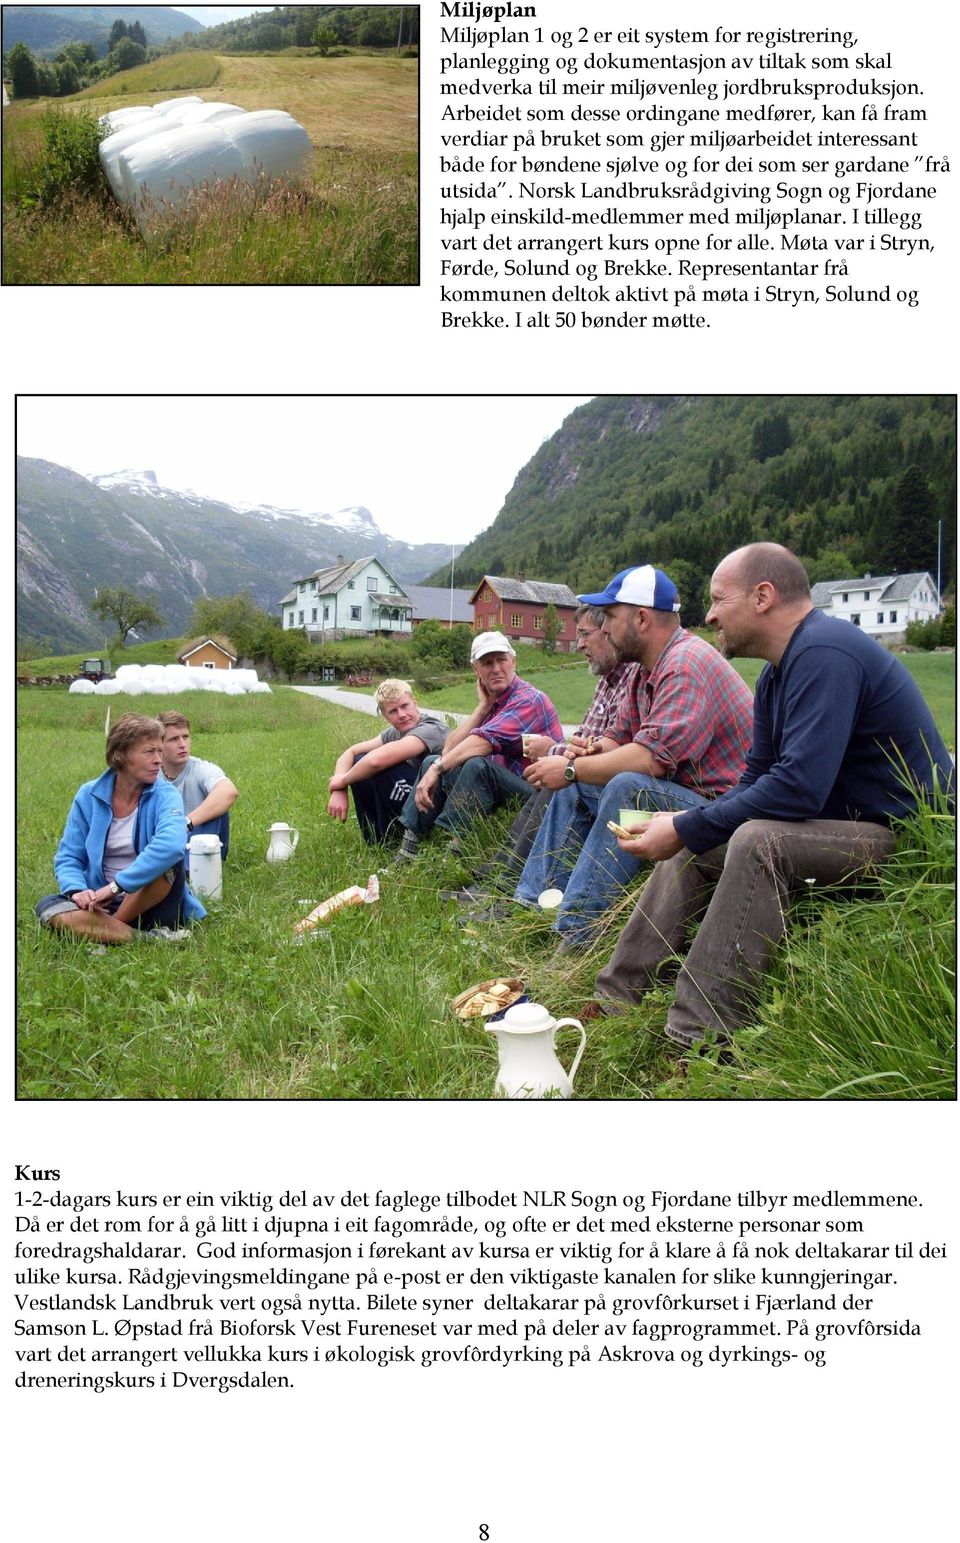 Norsk Landbruksrådgiving Sogn og Fjordane hjalp einskild-medlemmer med miljøplanar. I tillegg vart det arrangert kurs opne for alle. Møta var i Stryn, Førde, Solund og Brekke.